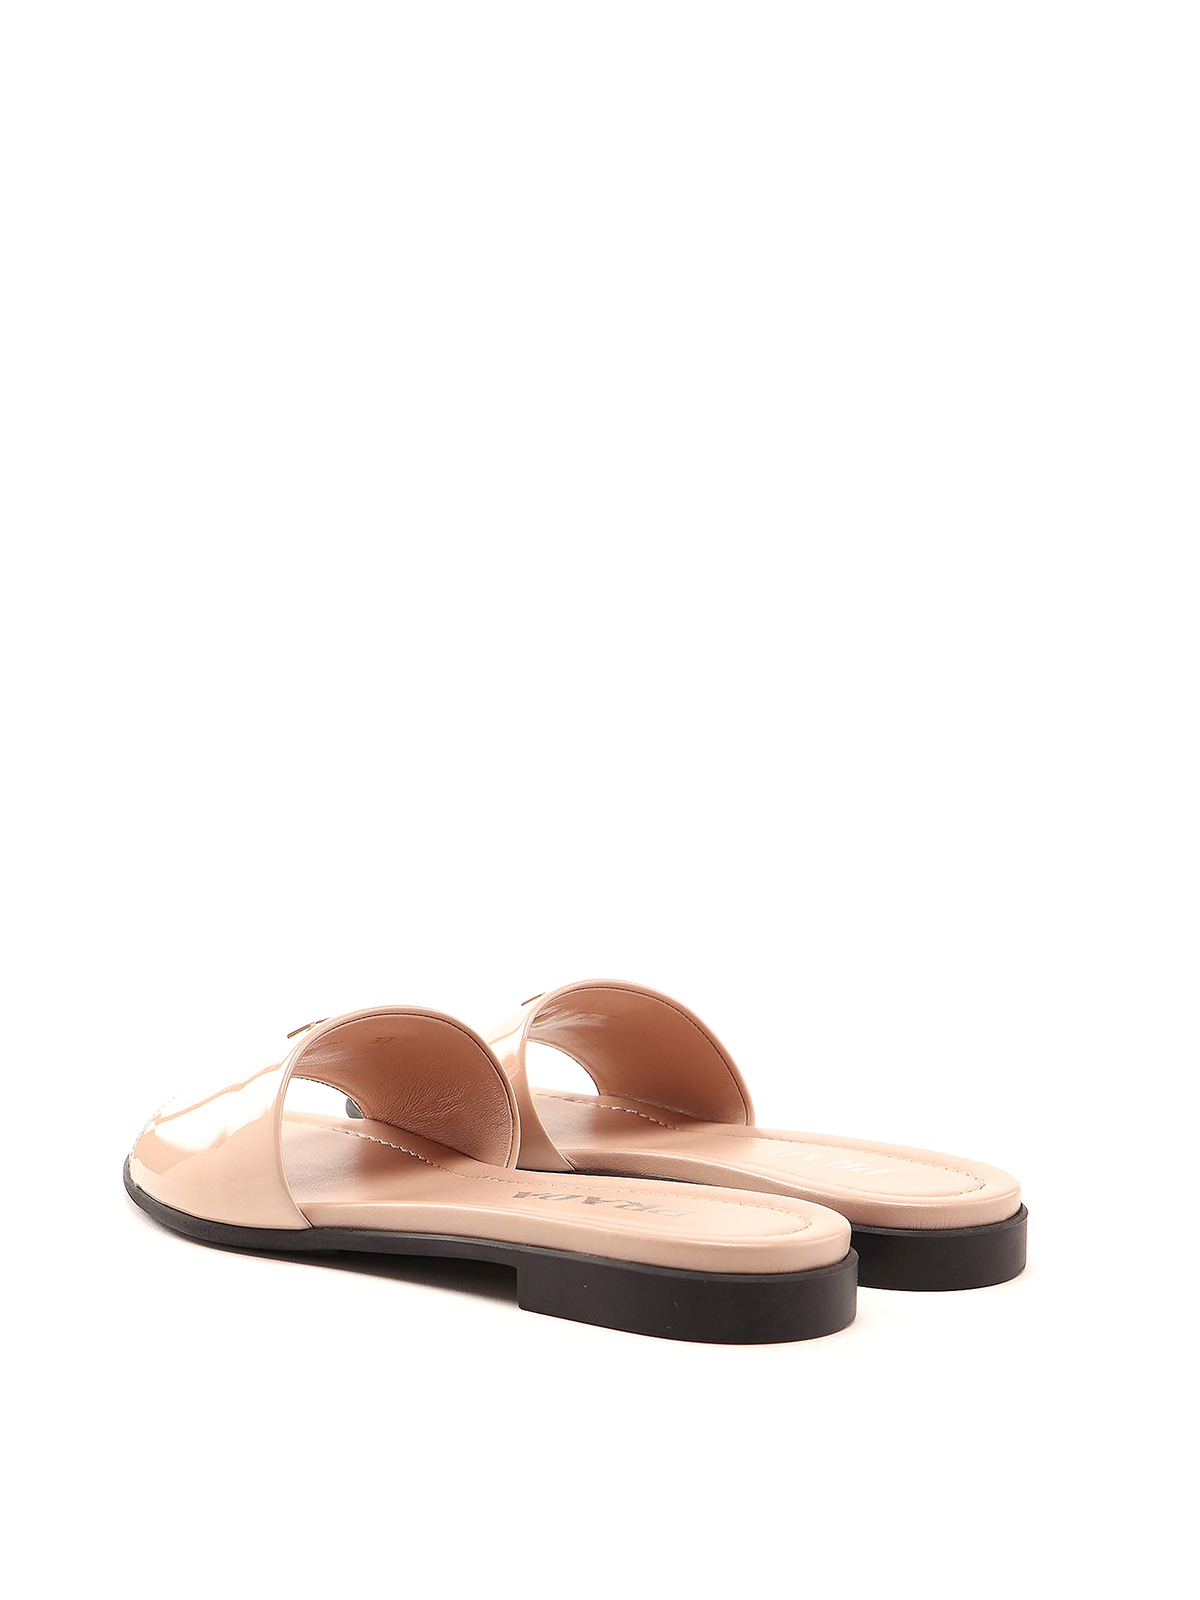 prada patent leather sandals